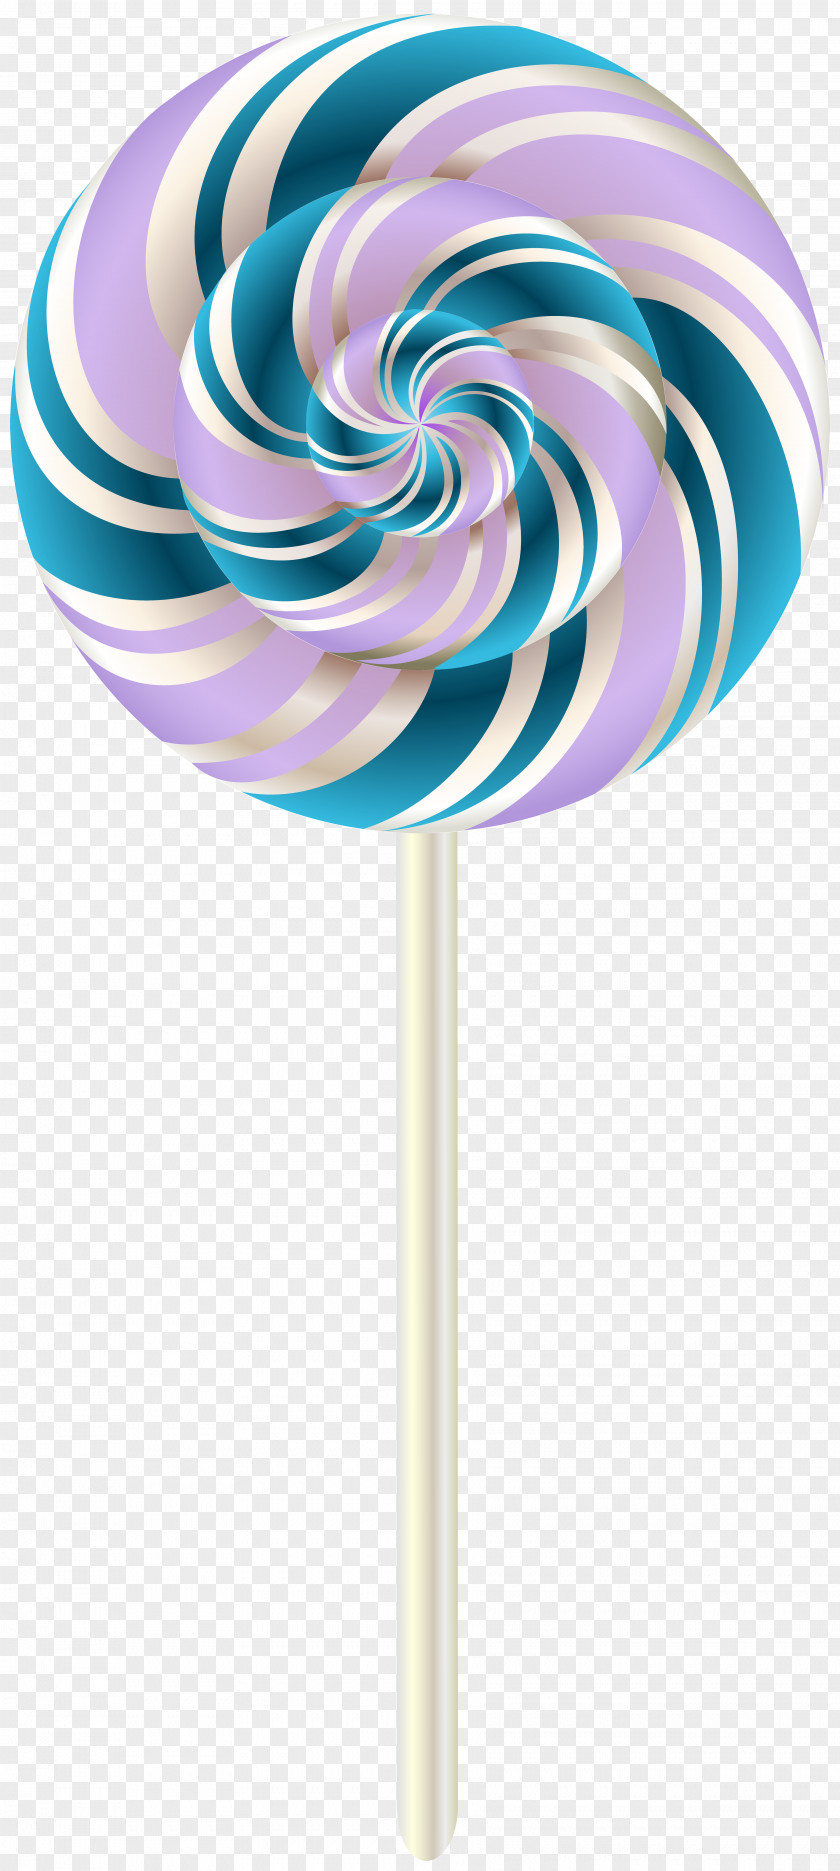 Lollipop Stick Candy Clip Art PNG